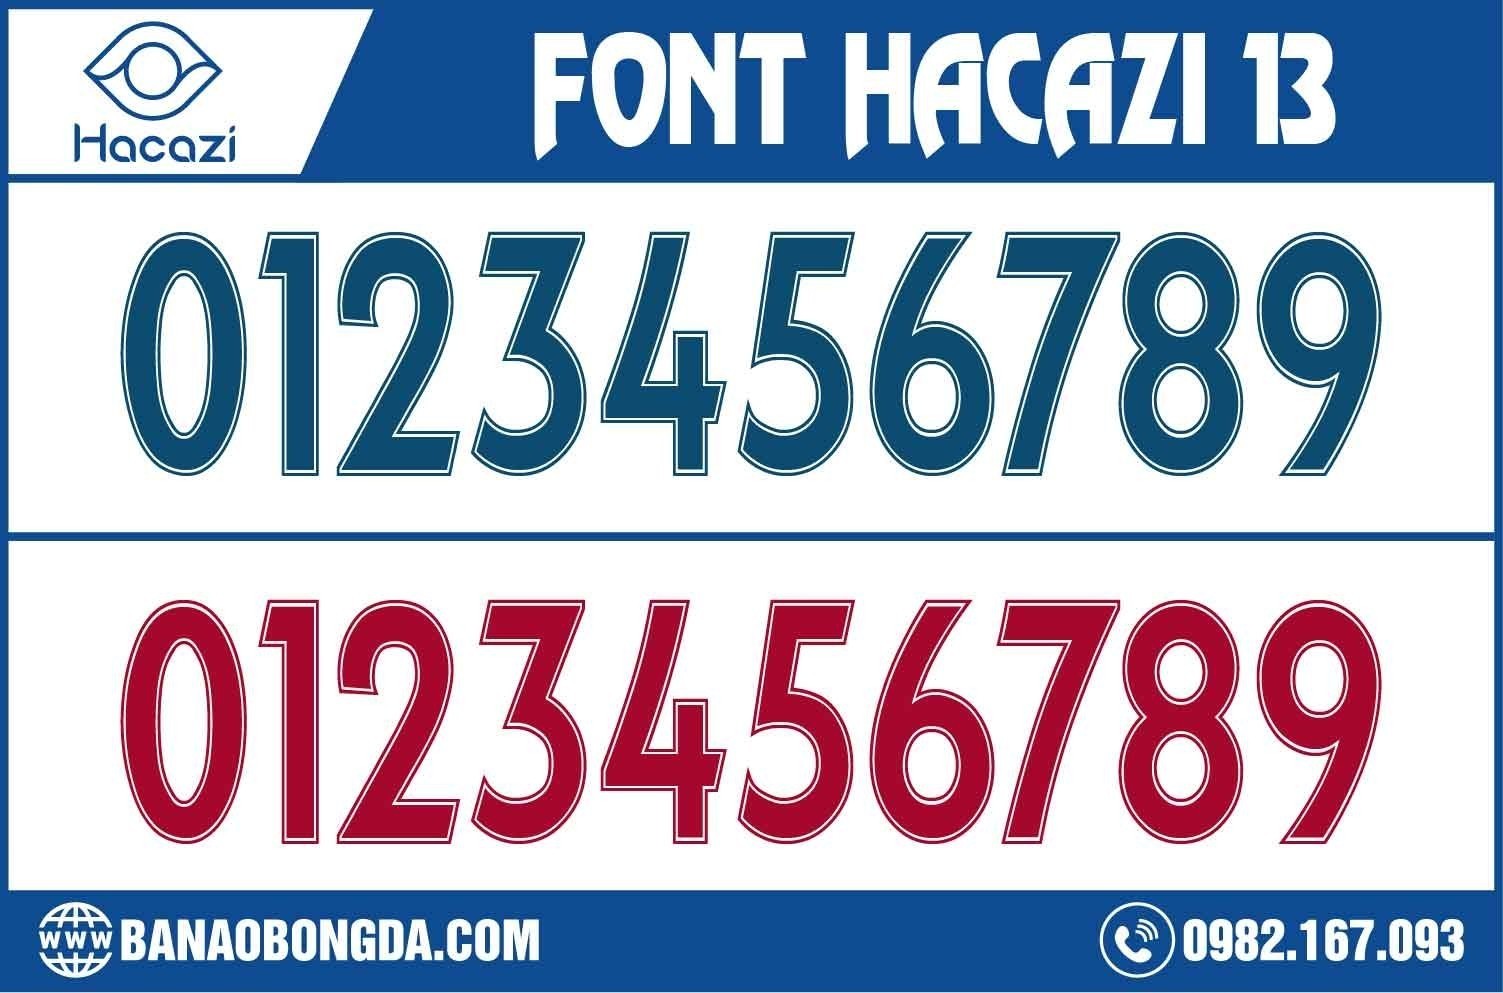  Tiếp tục là những mẫu font phong cách được cải tiến liên tục nằm trong bộ sưu tập mới. Font số áo bóng đá 12 là đứa con tinh thần được Shop Hacazi Sport chúng tôi nâng niu và lựa chọn giới thiệu đến mọi người. 